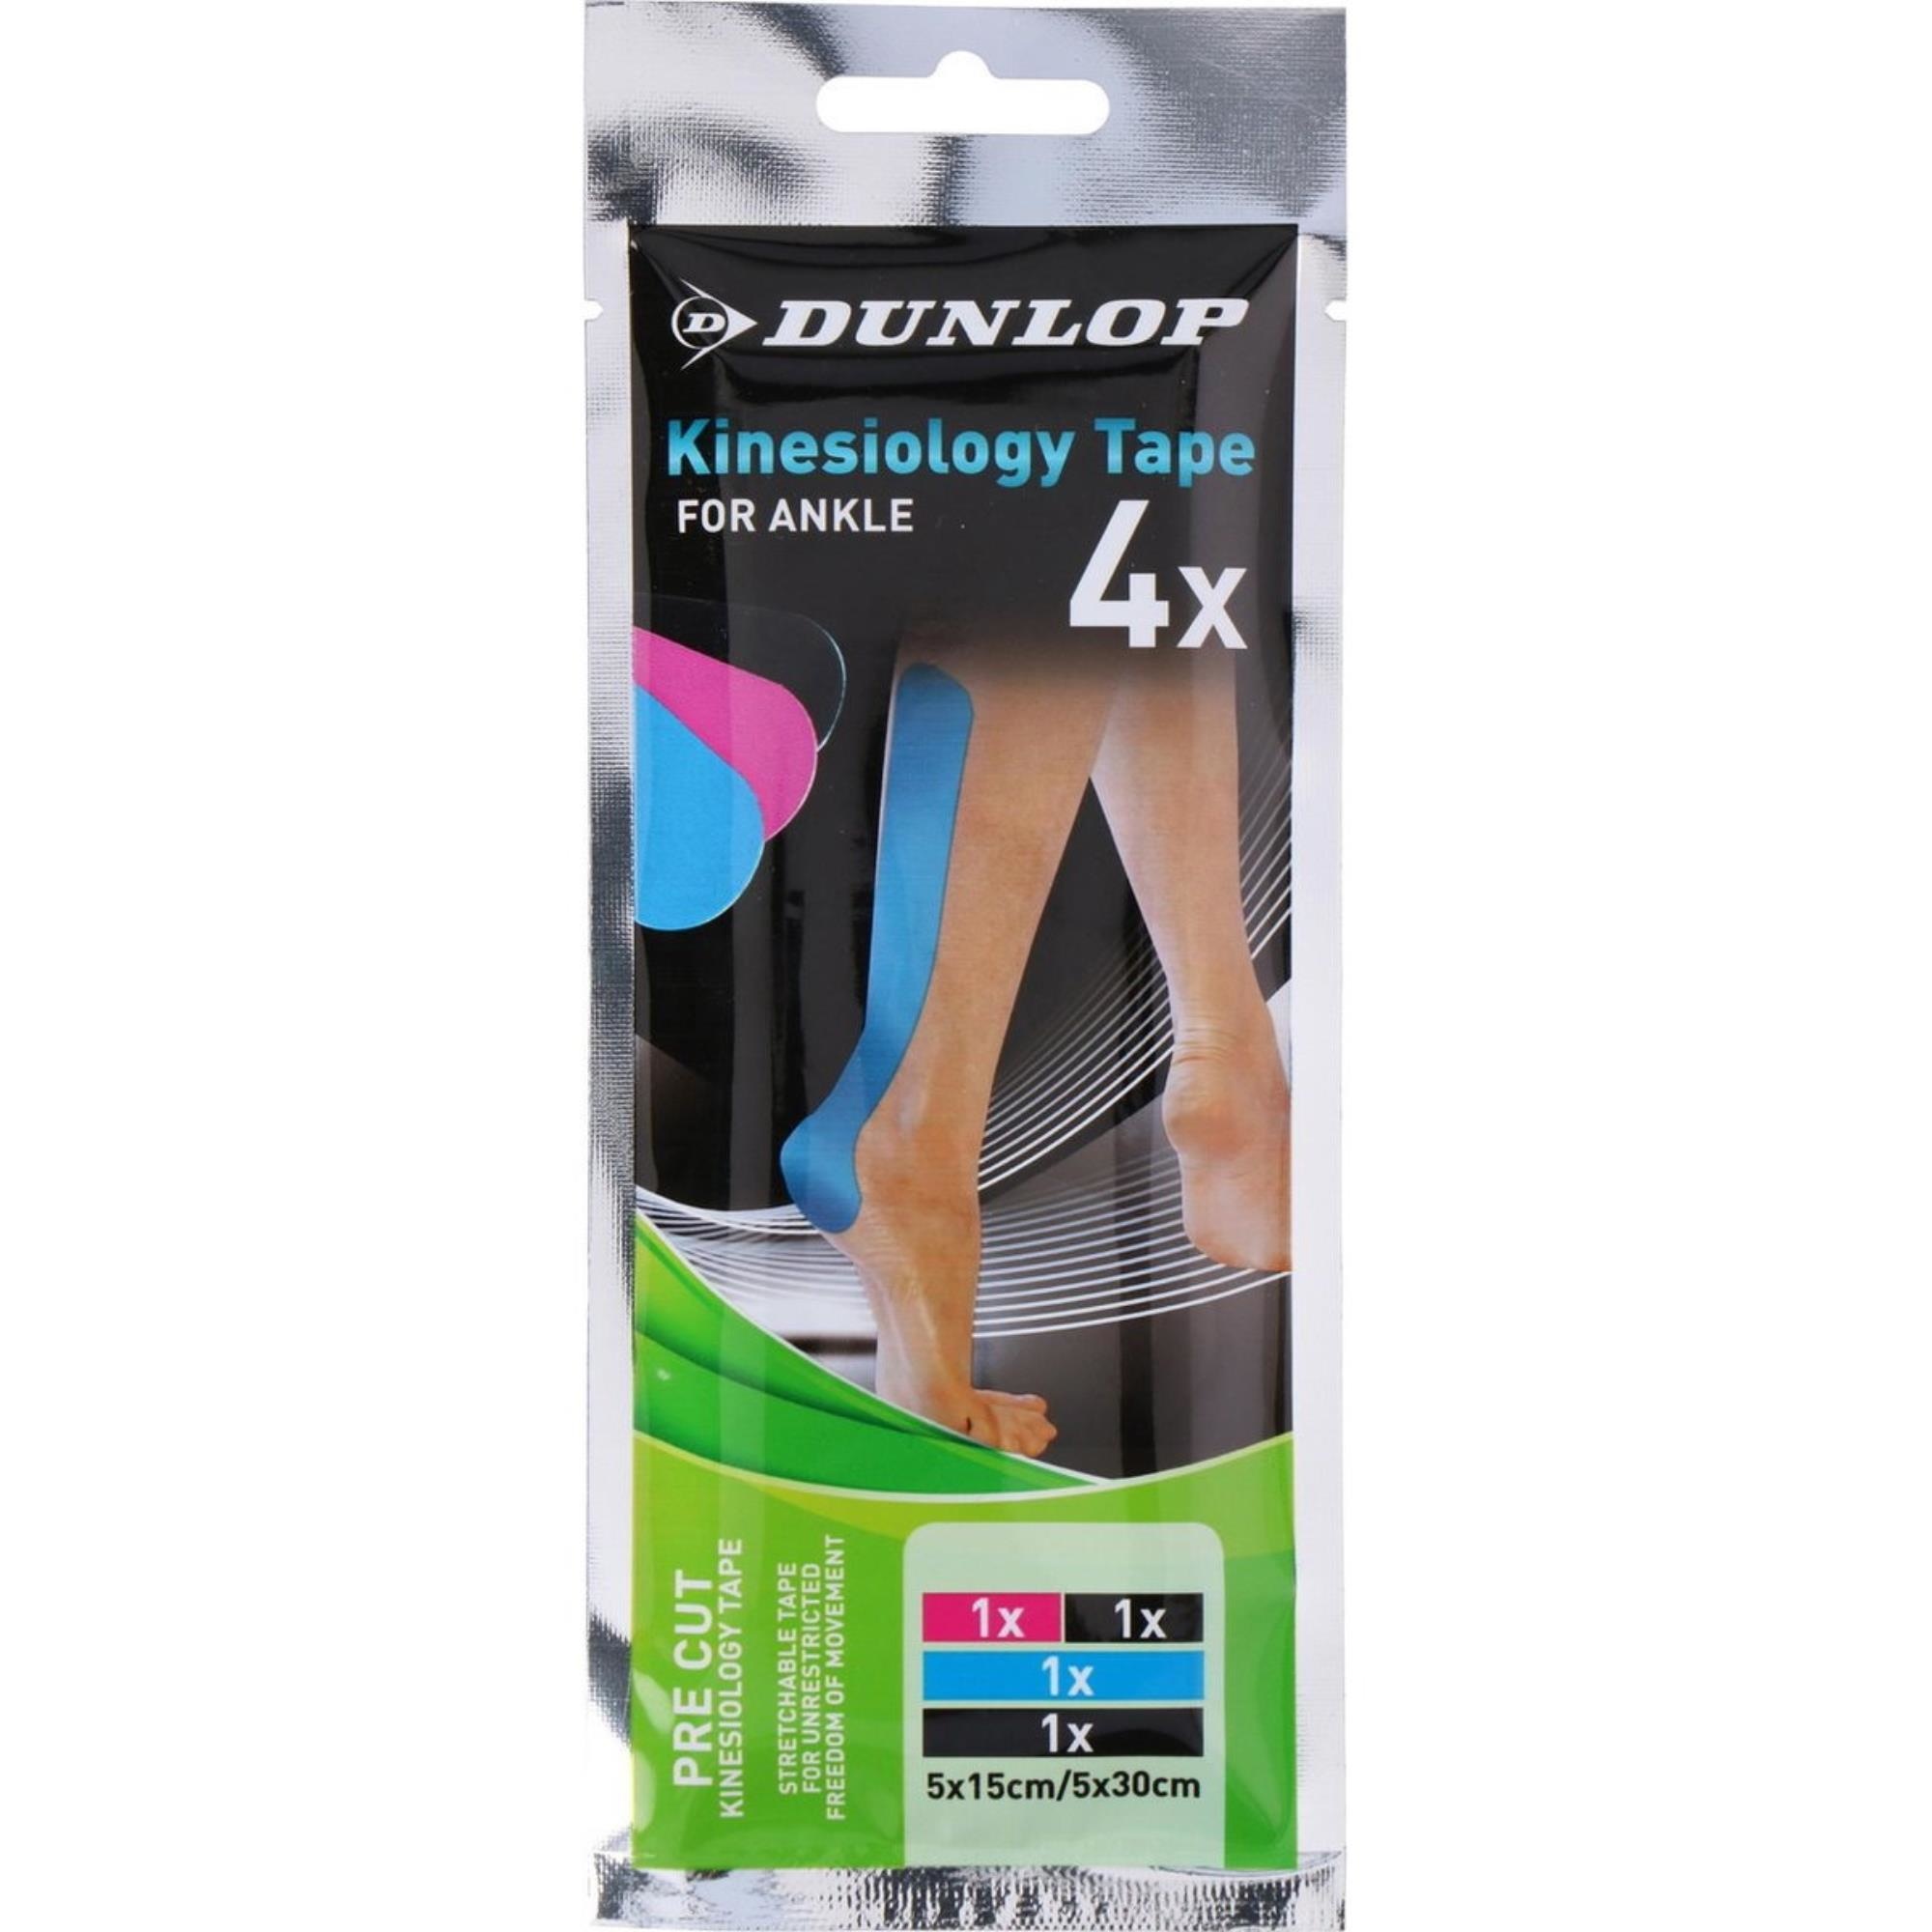 Muildier draadloos Boos Dunlop Kinesiotape enkel - 4 stuks - kinesiologie tape / medical tape /  sporttape kopen? - 2Cheap